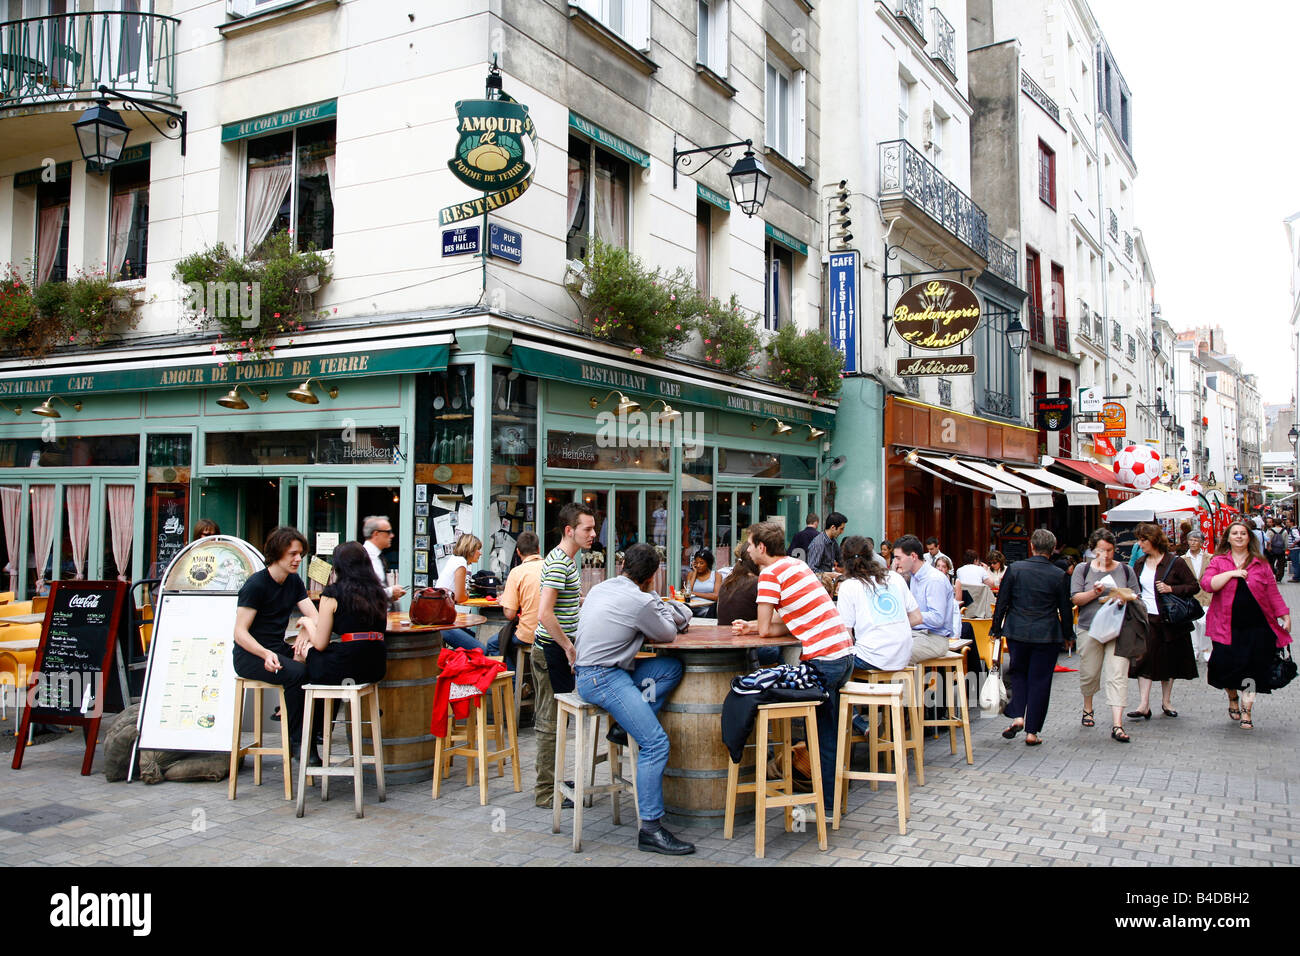 Juillet 2008 - des gens assis à un café en plein air dans une rue piétonne Nantes Bretagne France Banque D'Images